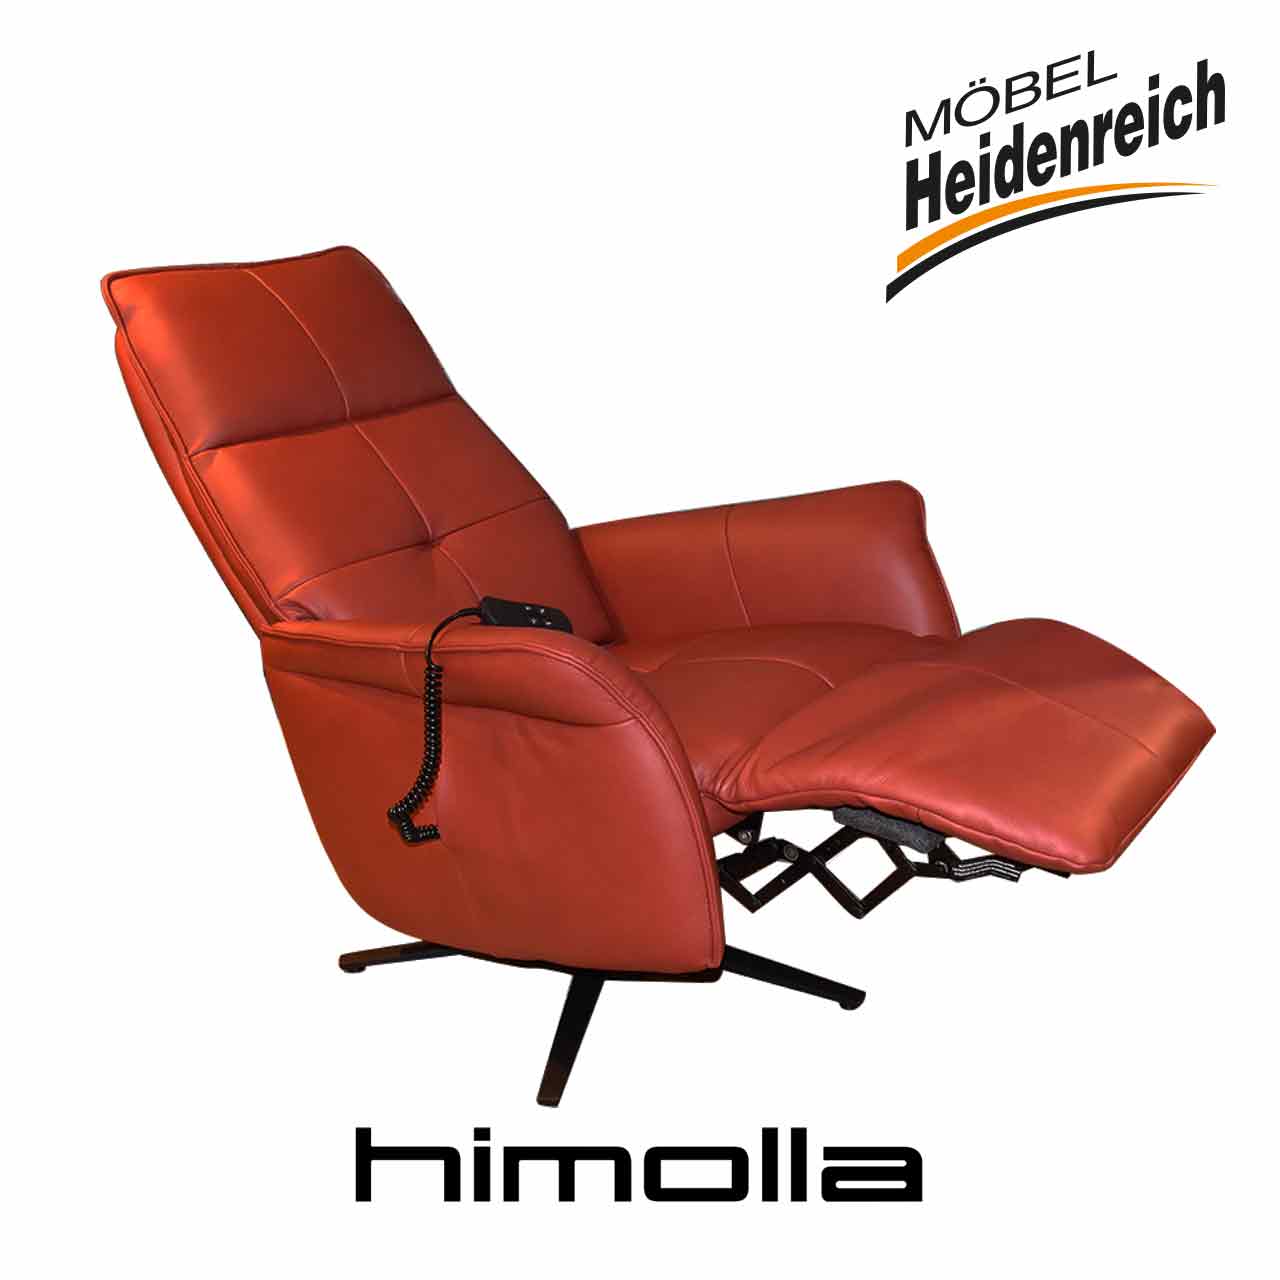 Himolla Heidenreich Relaxsessel | Möbel 9361-56V